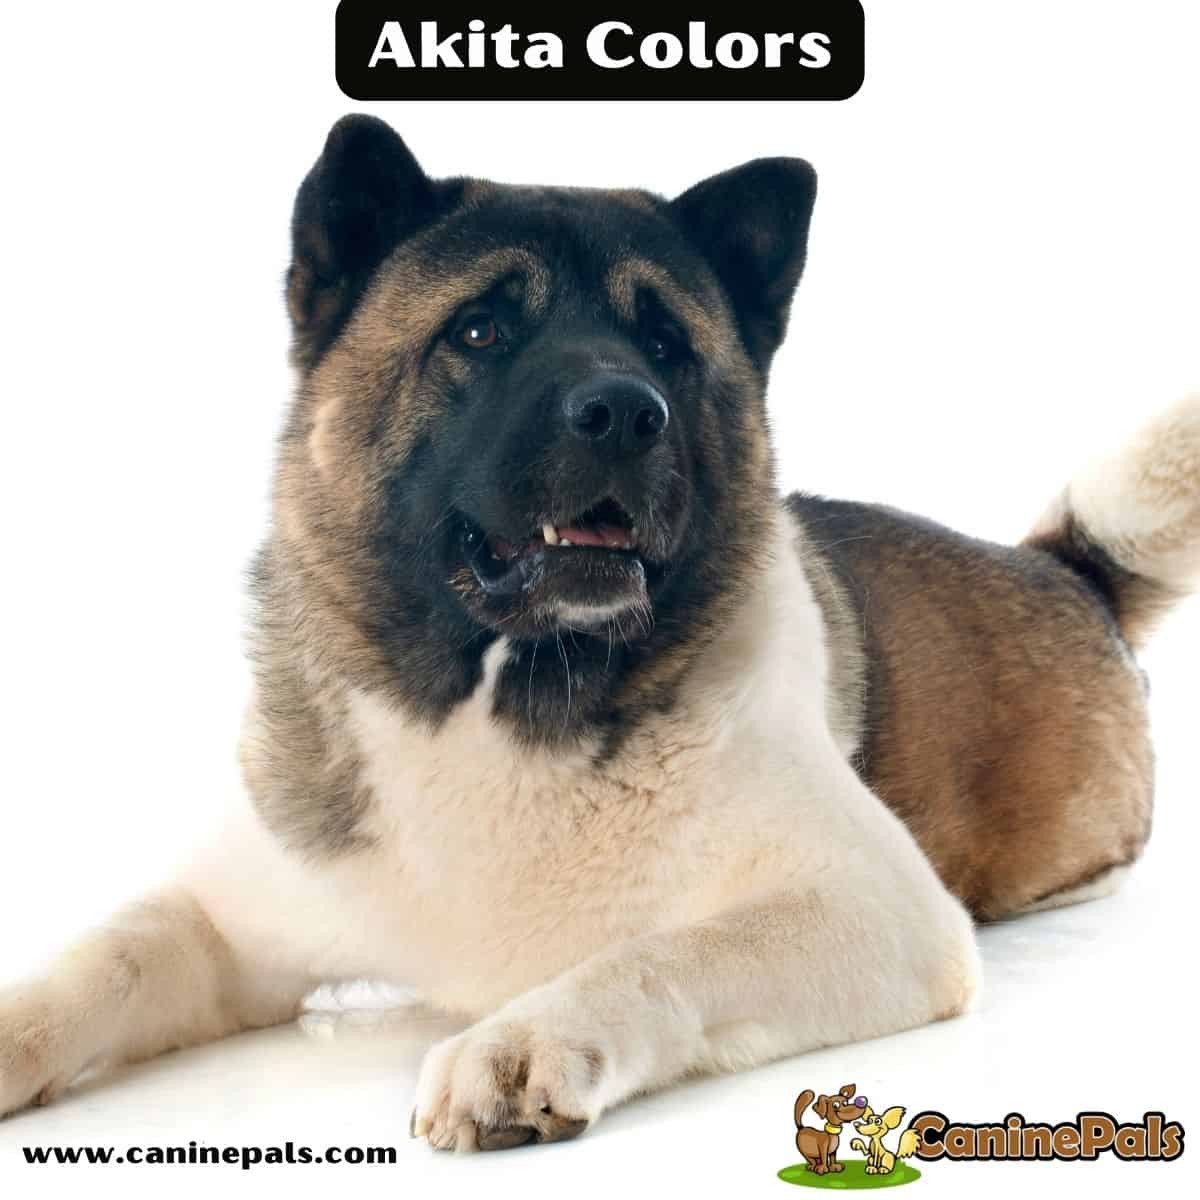 Akita Colors